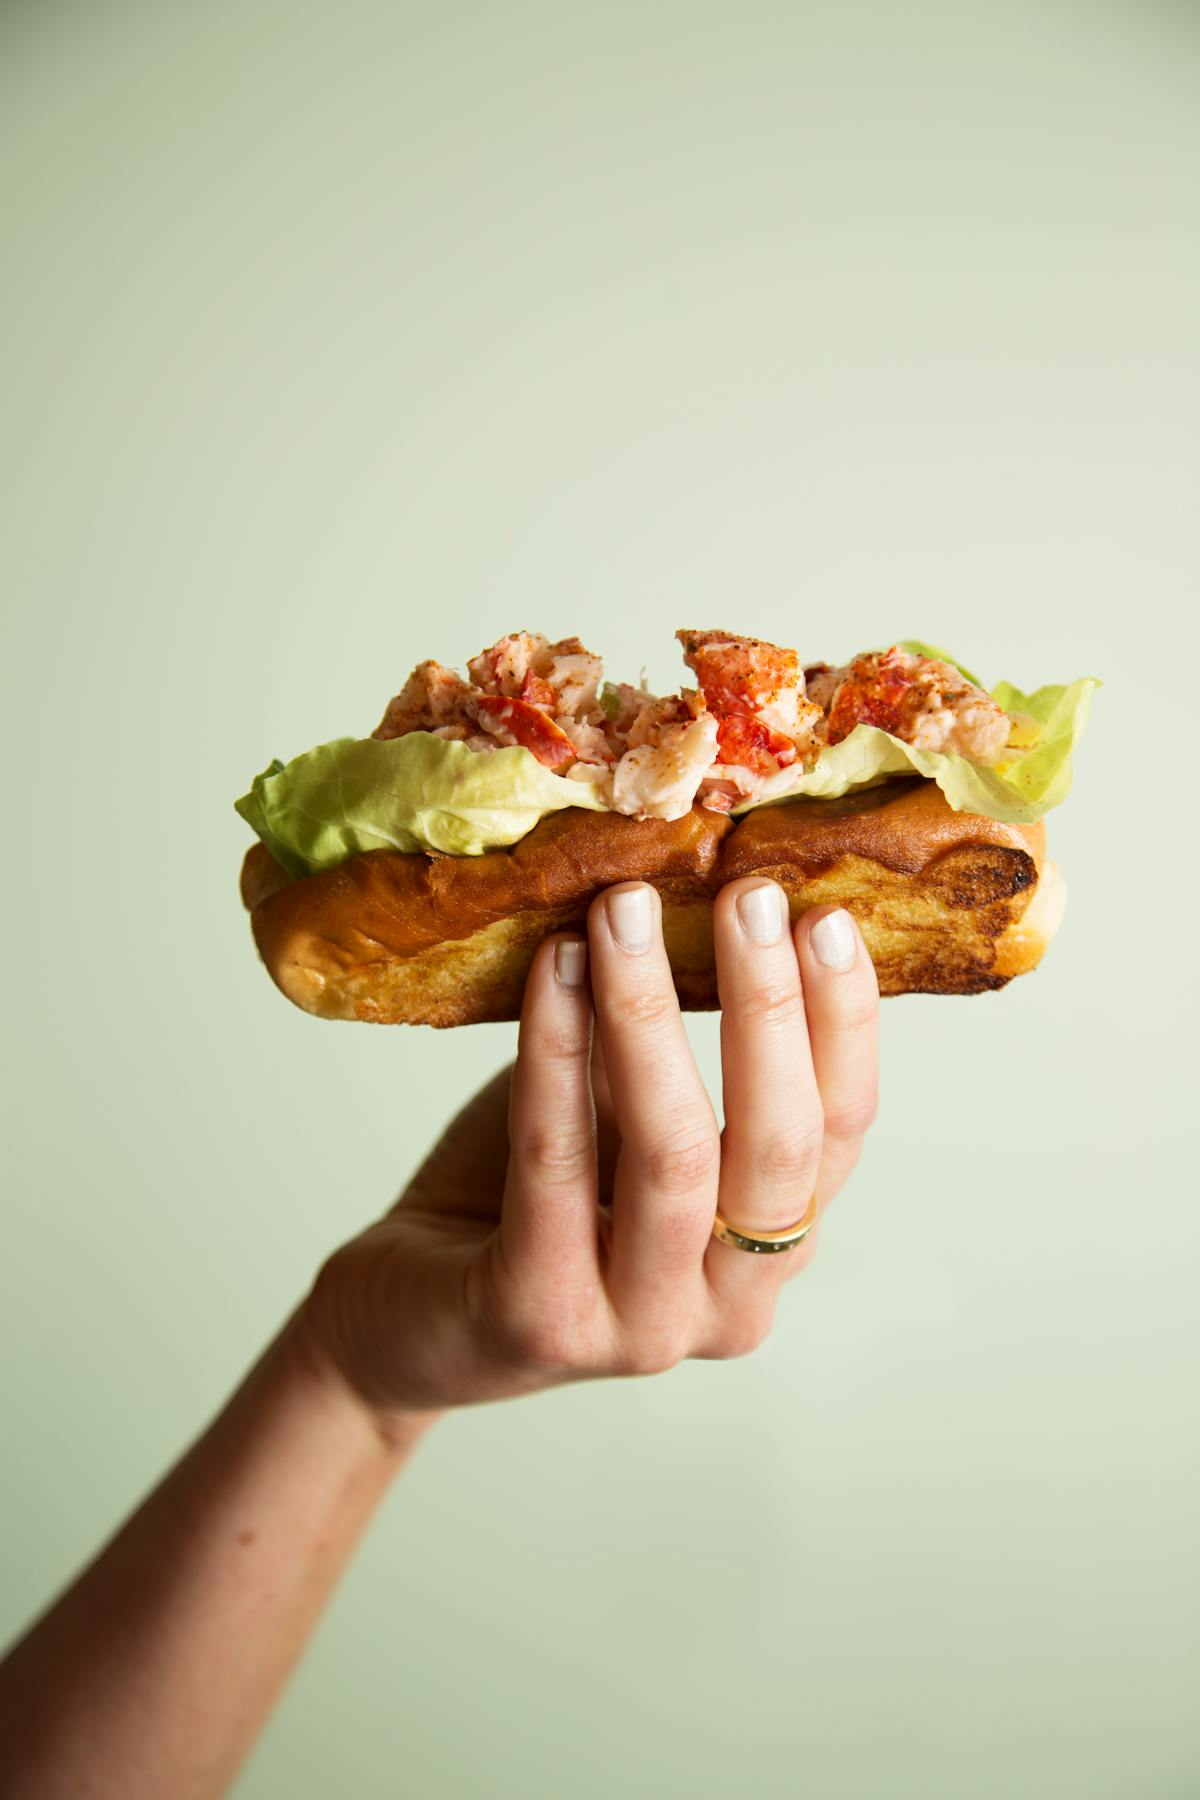 a hand holding a half eaten sandwich